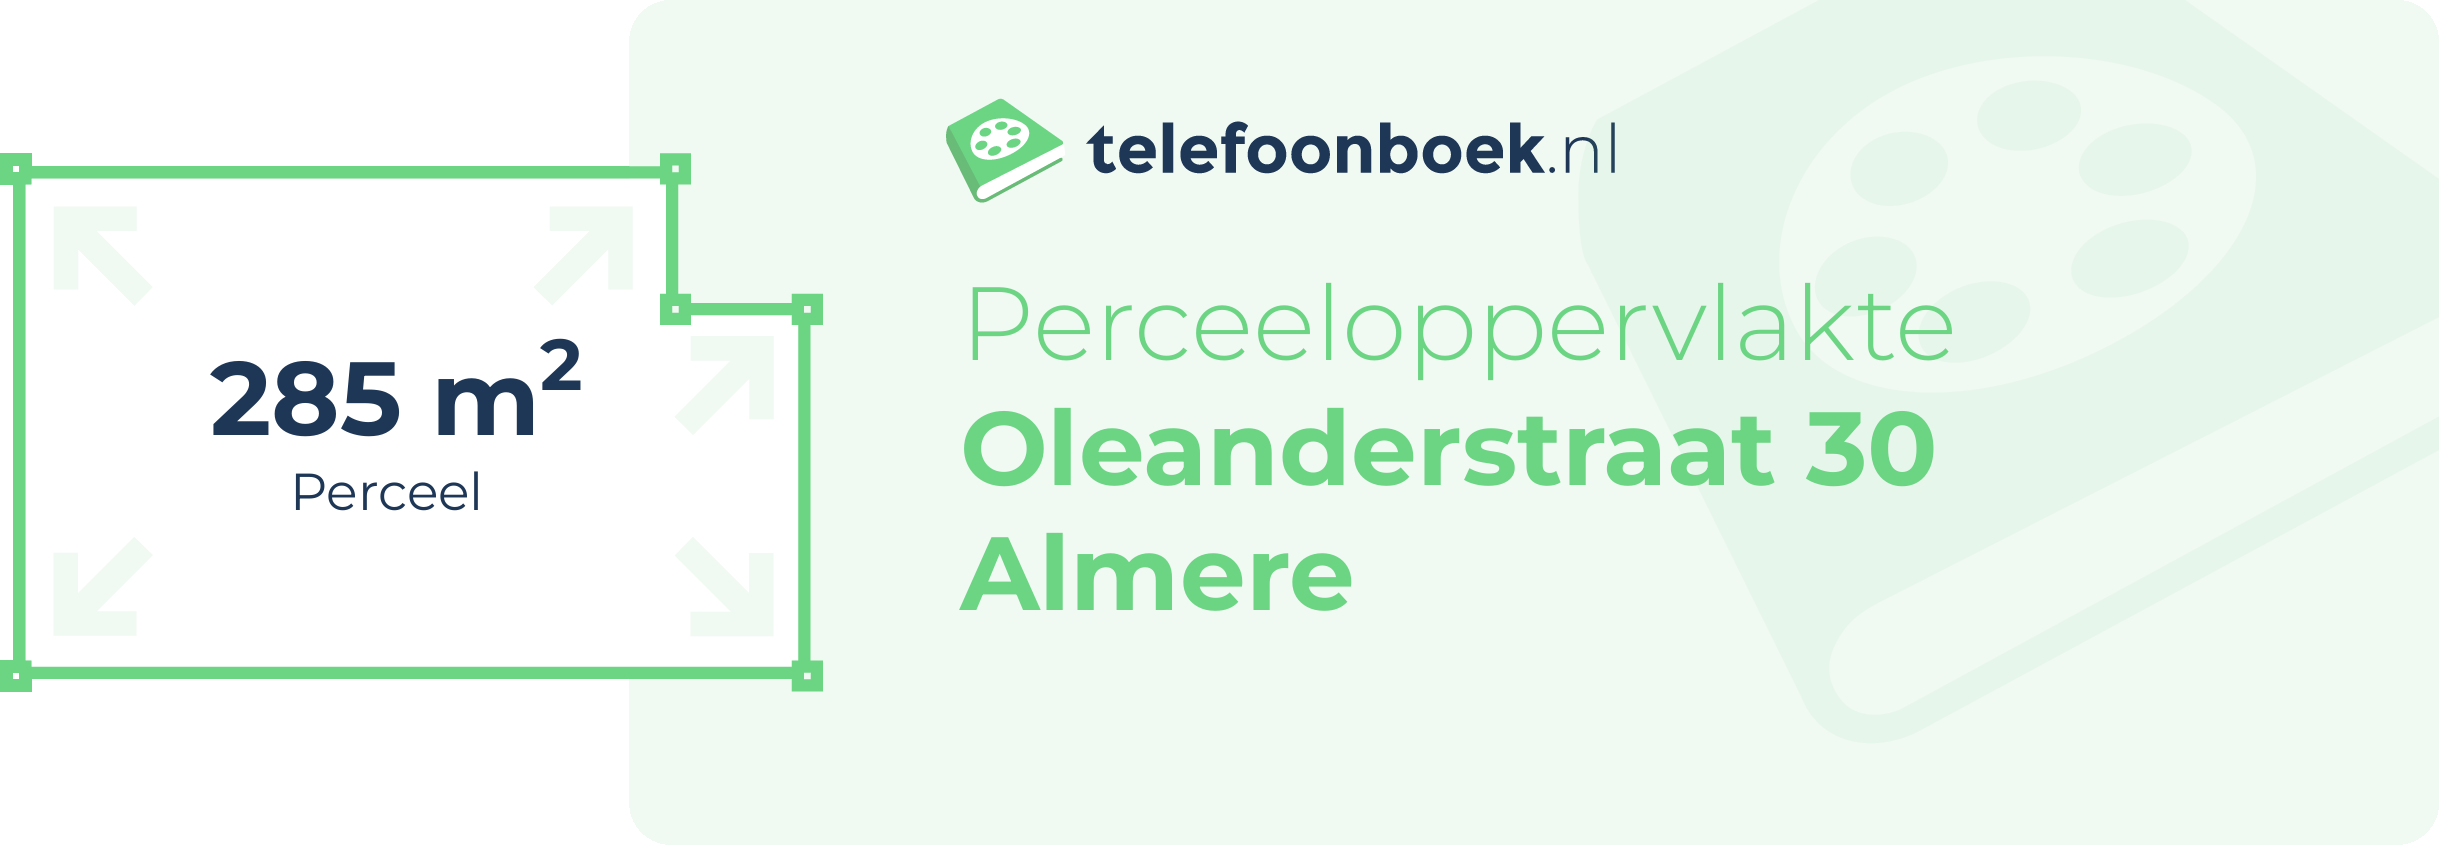 Perceeloppervlakte Oleanderstraat 30 Almere